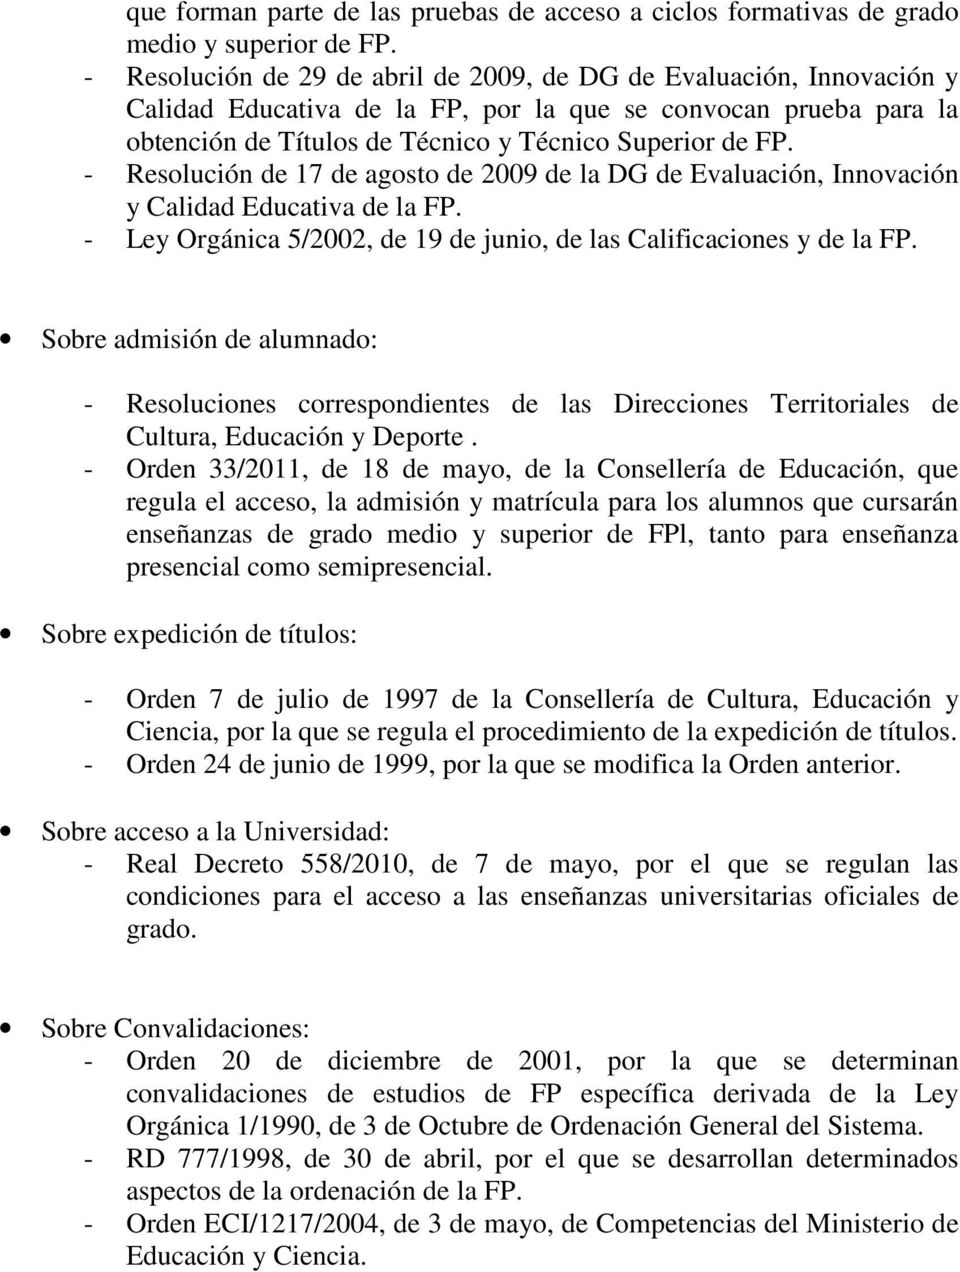 - Resolución de 17 de agosto de 2009 de la DG de Evaluación, Innovación y Calidad Educativa de la FP. - Ley Orgánica 5/2002, de 19 de junio, de las Calificaciones y de la FP.